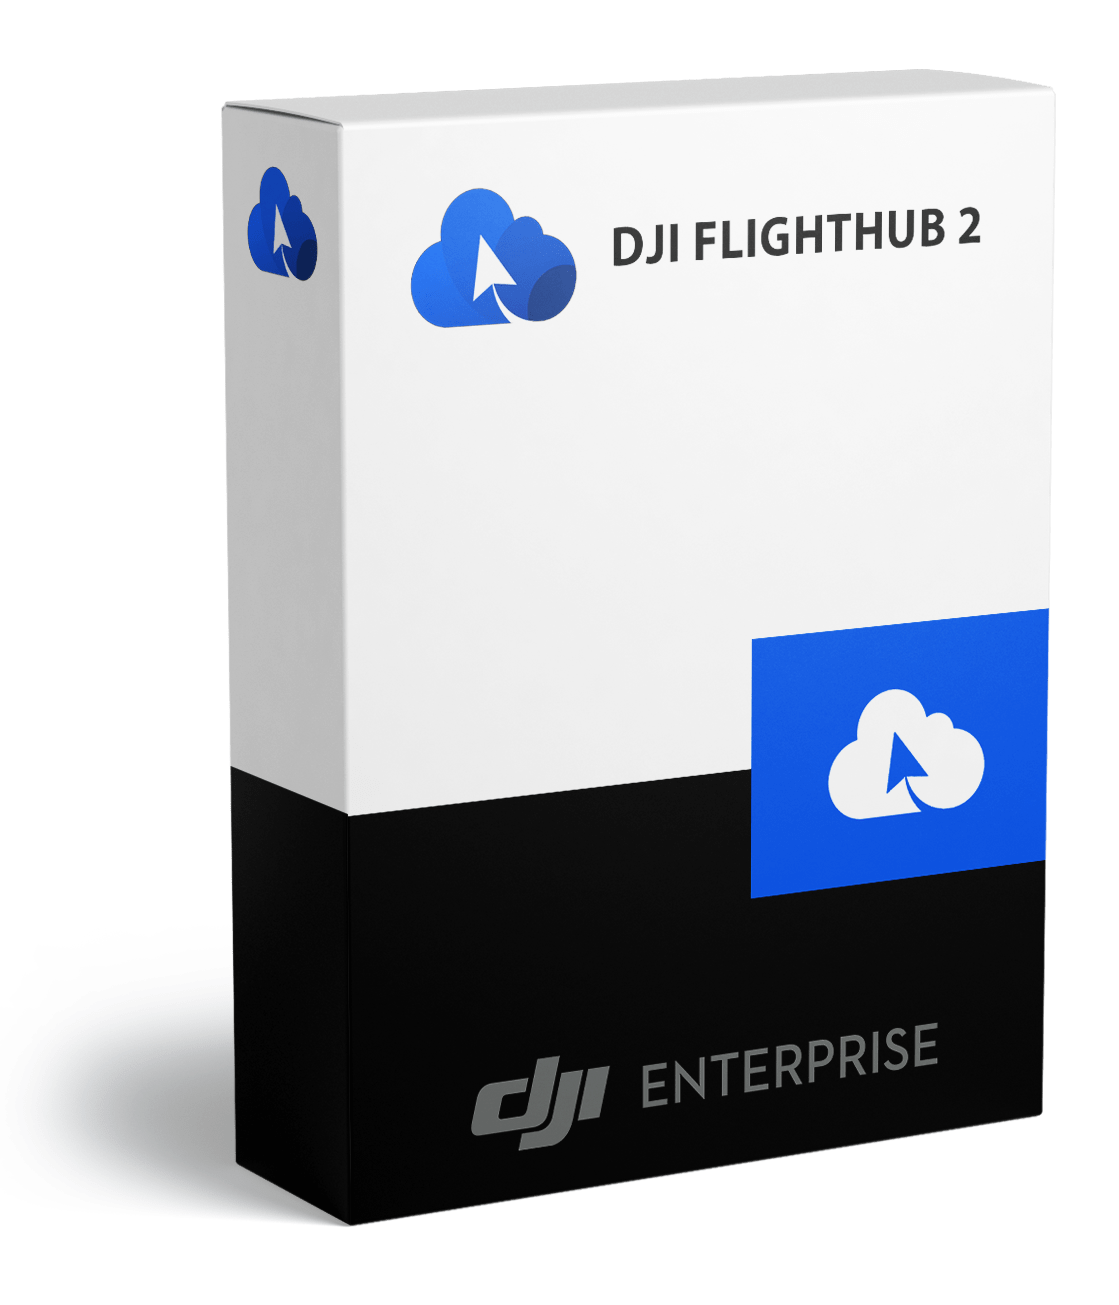 DJI Flight Hub 2